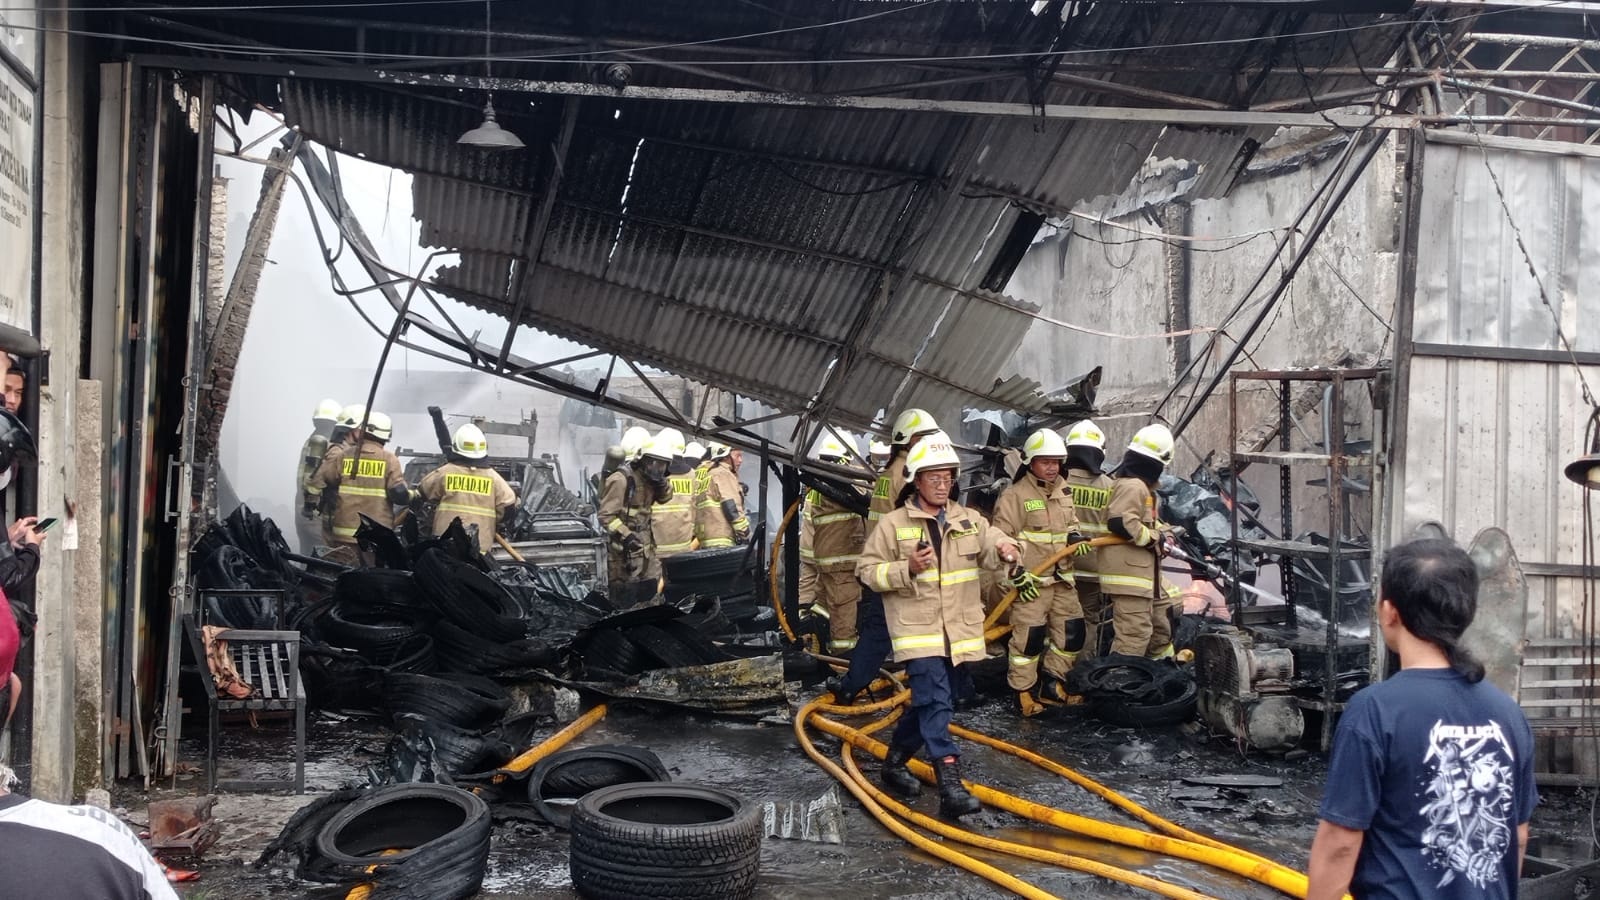 Kebakaran melanda sebuah toko ban di Jalan Jenderal Basuki Rachmat, Rawa Bunga, Jatinegara, Jakarta Timur. (Foto: PMJ News/Fajar)